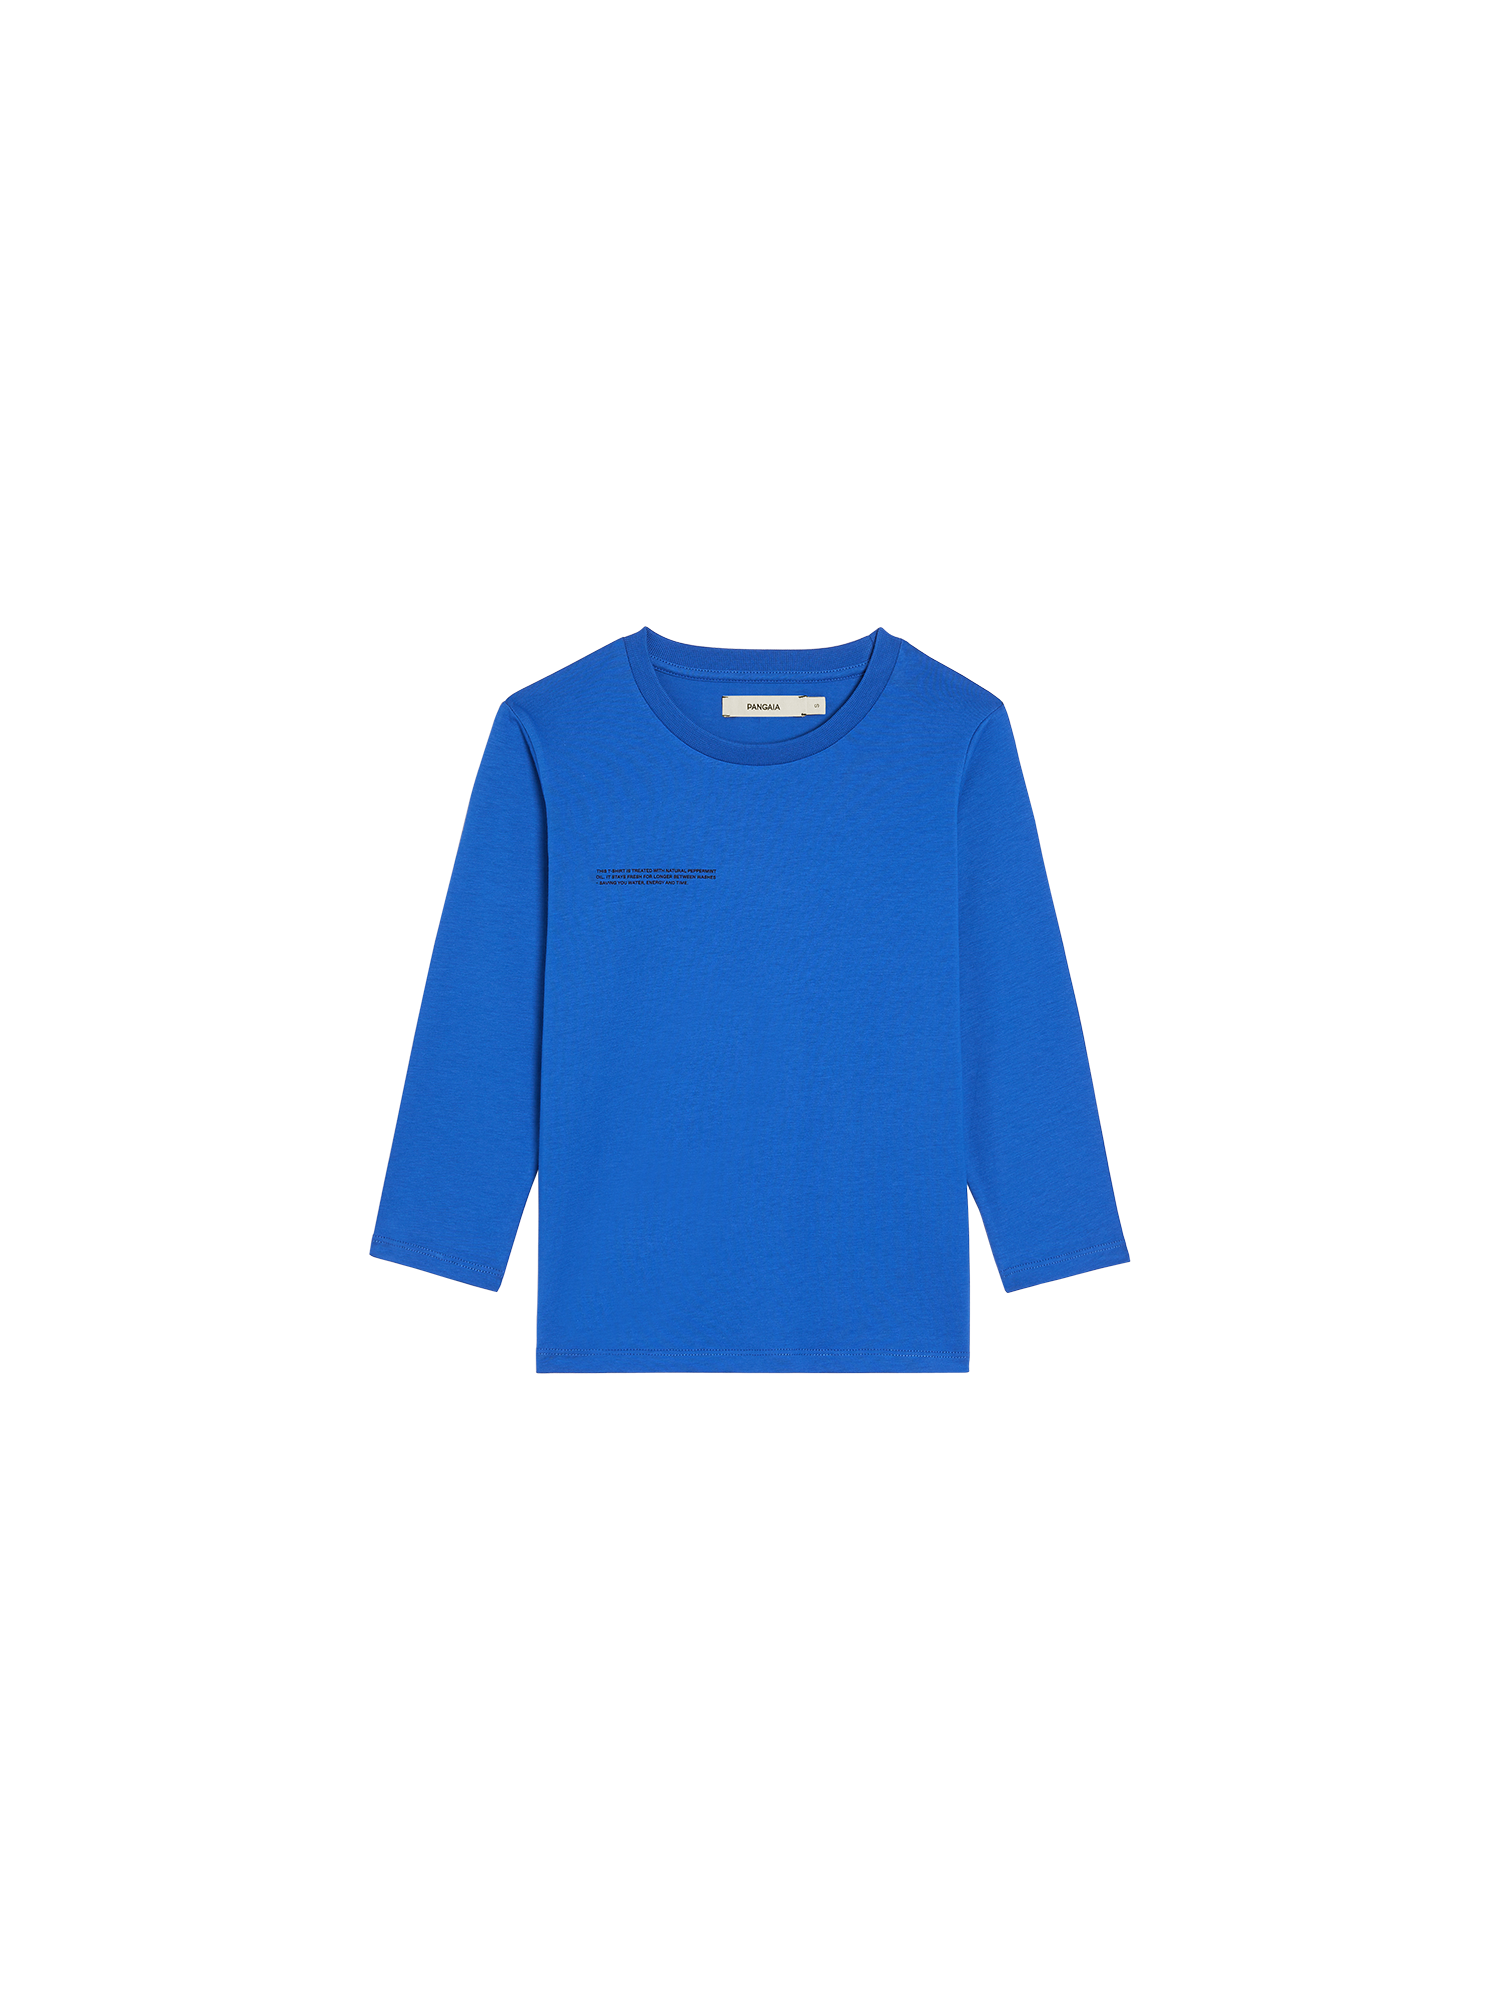 Kids 365 PPRMINT Long Sleeve T-shirt Core—cobalt blue-packshot-3